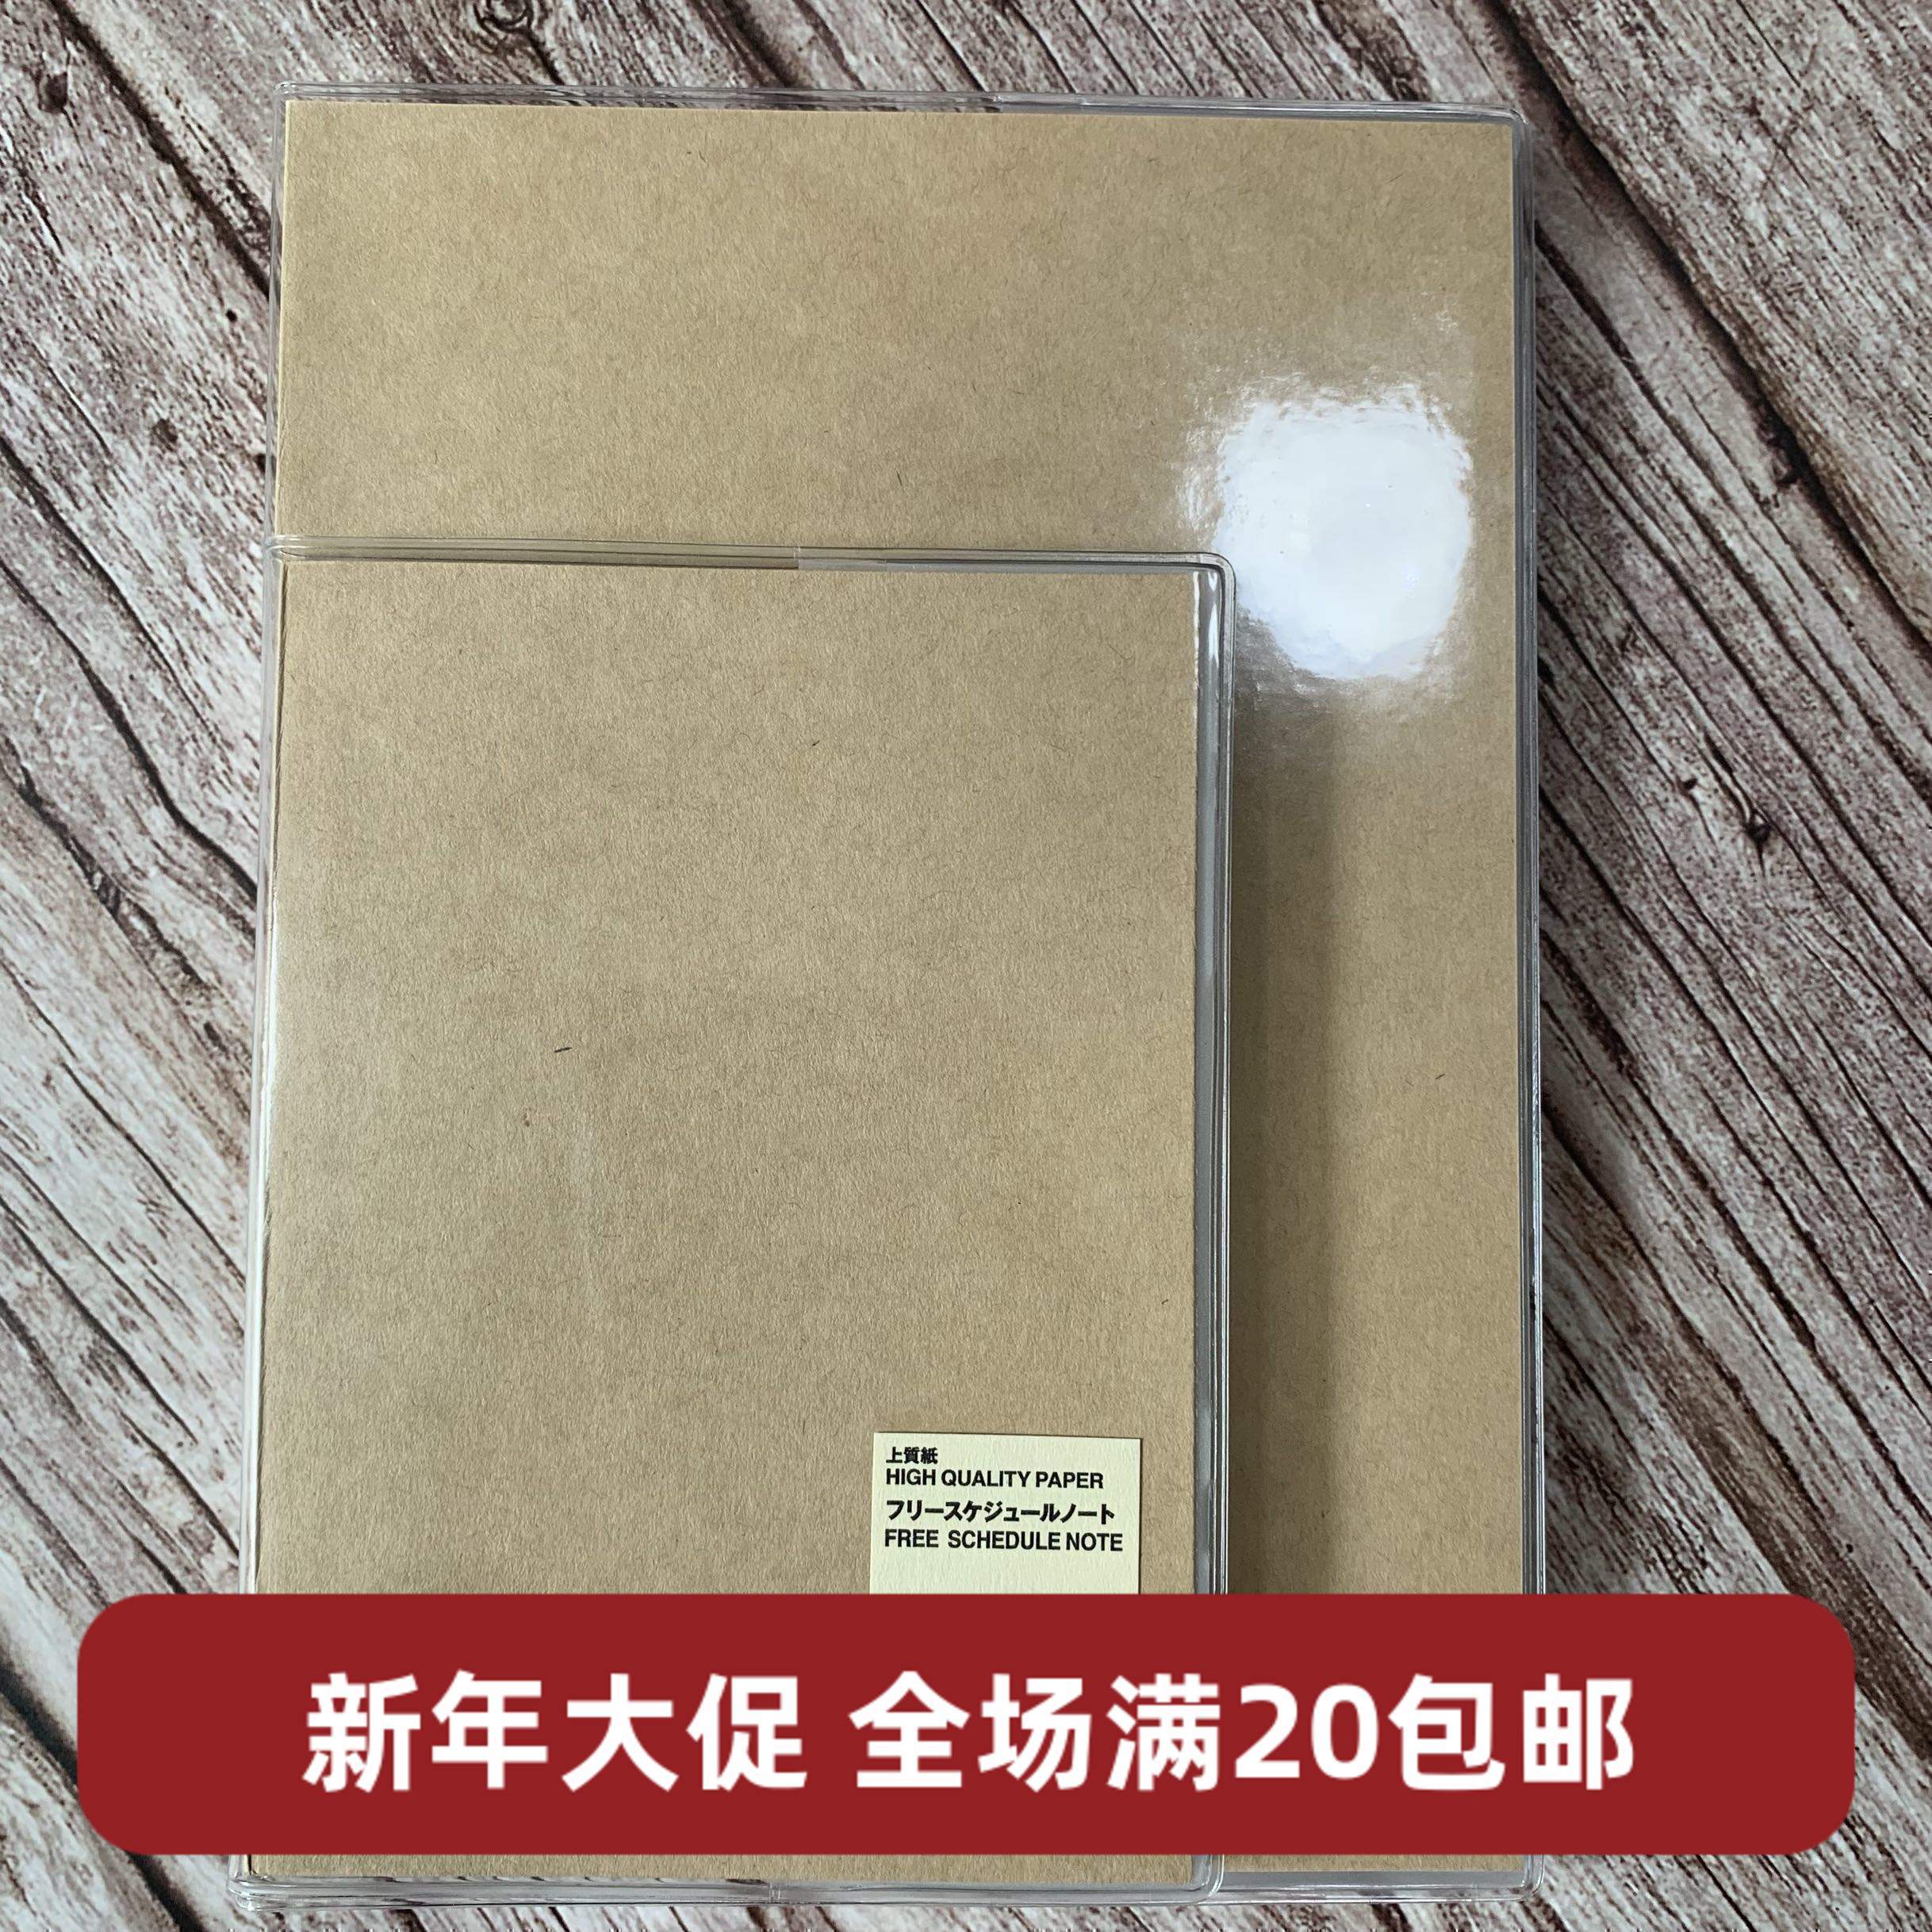 日本無印良品MUJI方格筆記本手賬本原色牛皮紙記事本順滑書寫32頁-Taobao